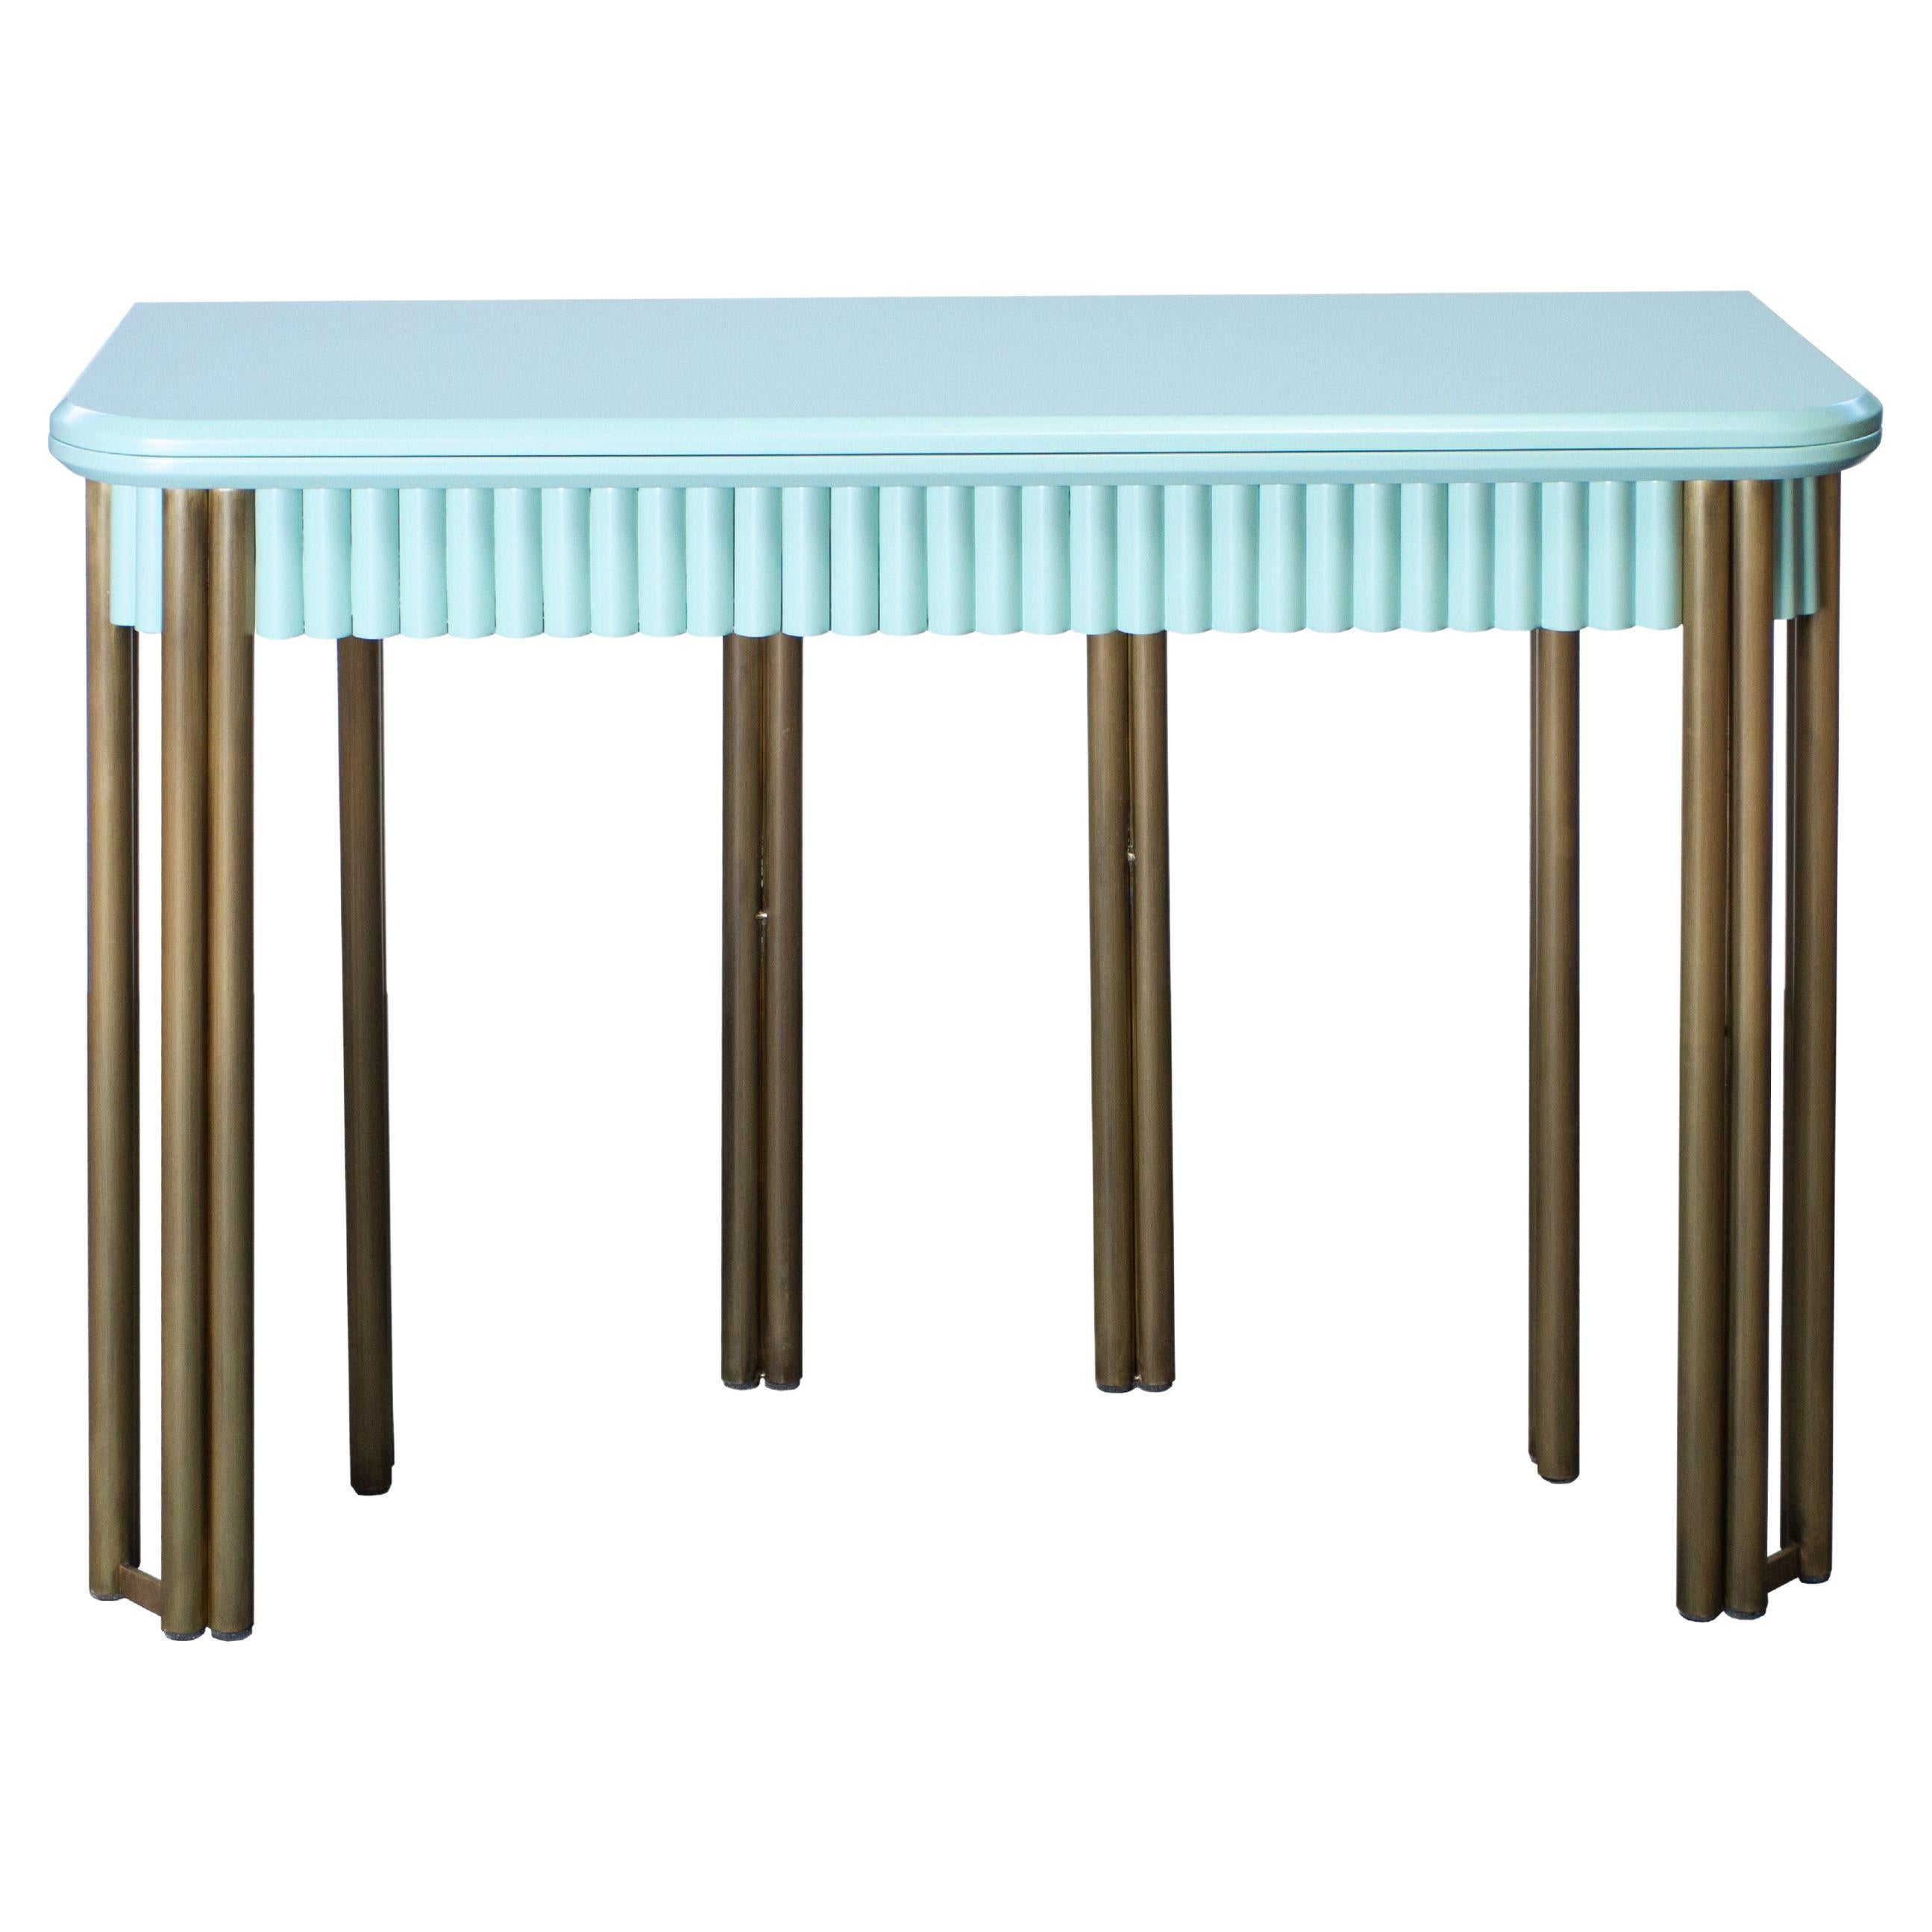 Table console à rallonge du 21e siècle en bois laqué et laiton, Hebanon Studio